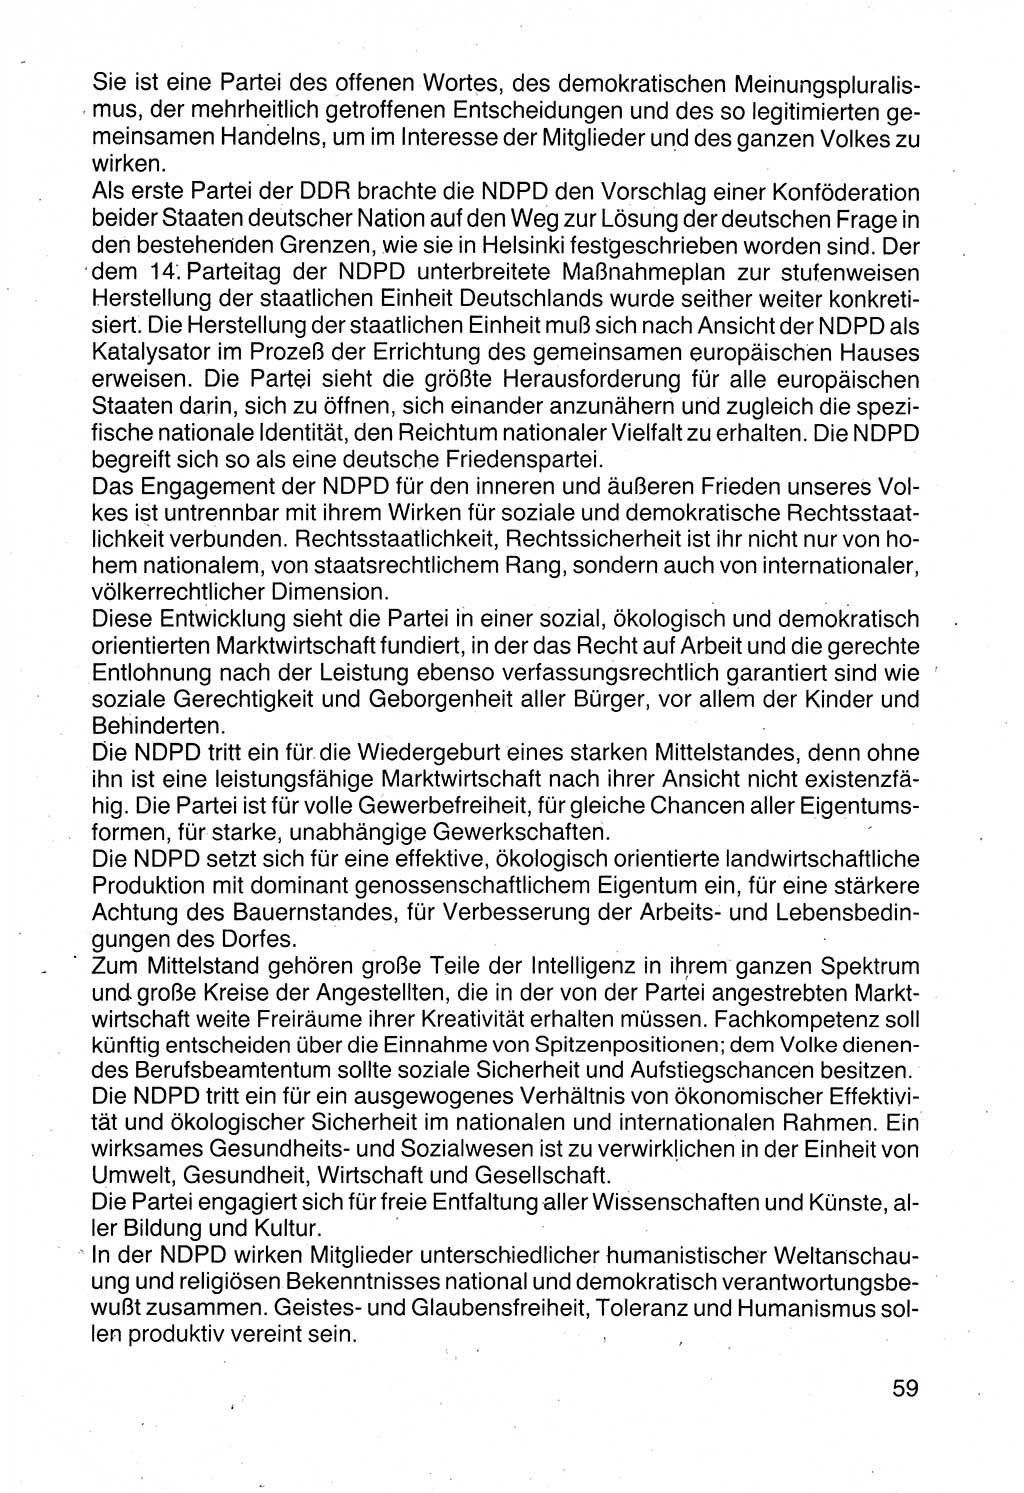 Politische Parteien und Bewegungen der DDR (Deutsche Demokratische Republik) über sich selbst 1990, Seite 59 (Pol. Part. Bew. DDR 1990, S. 59)